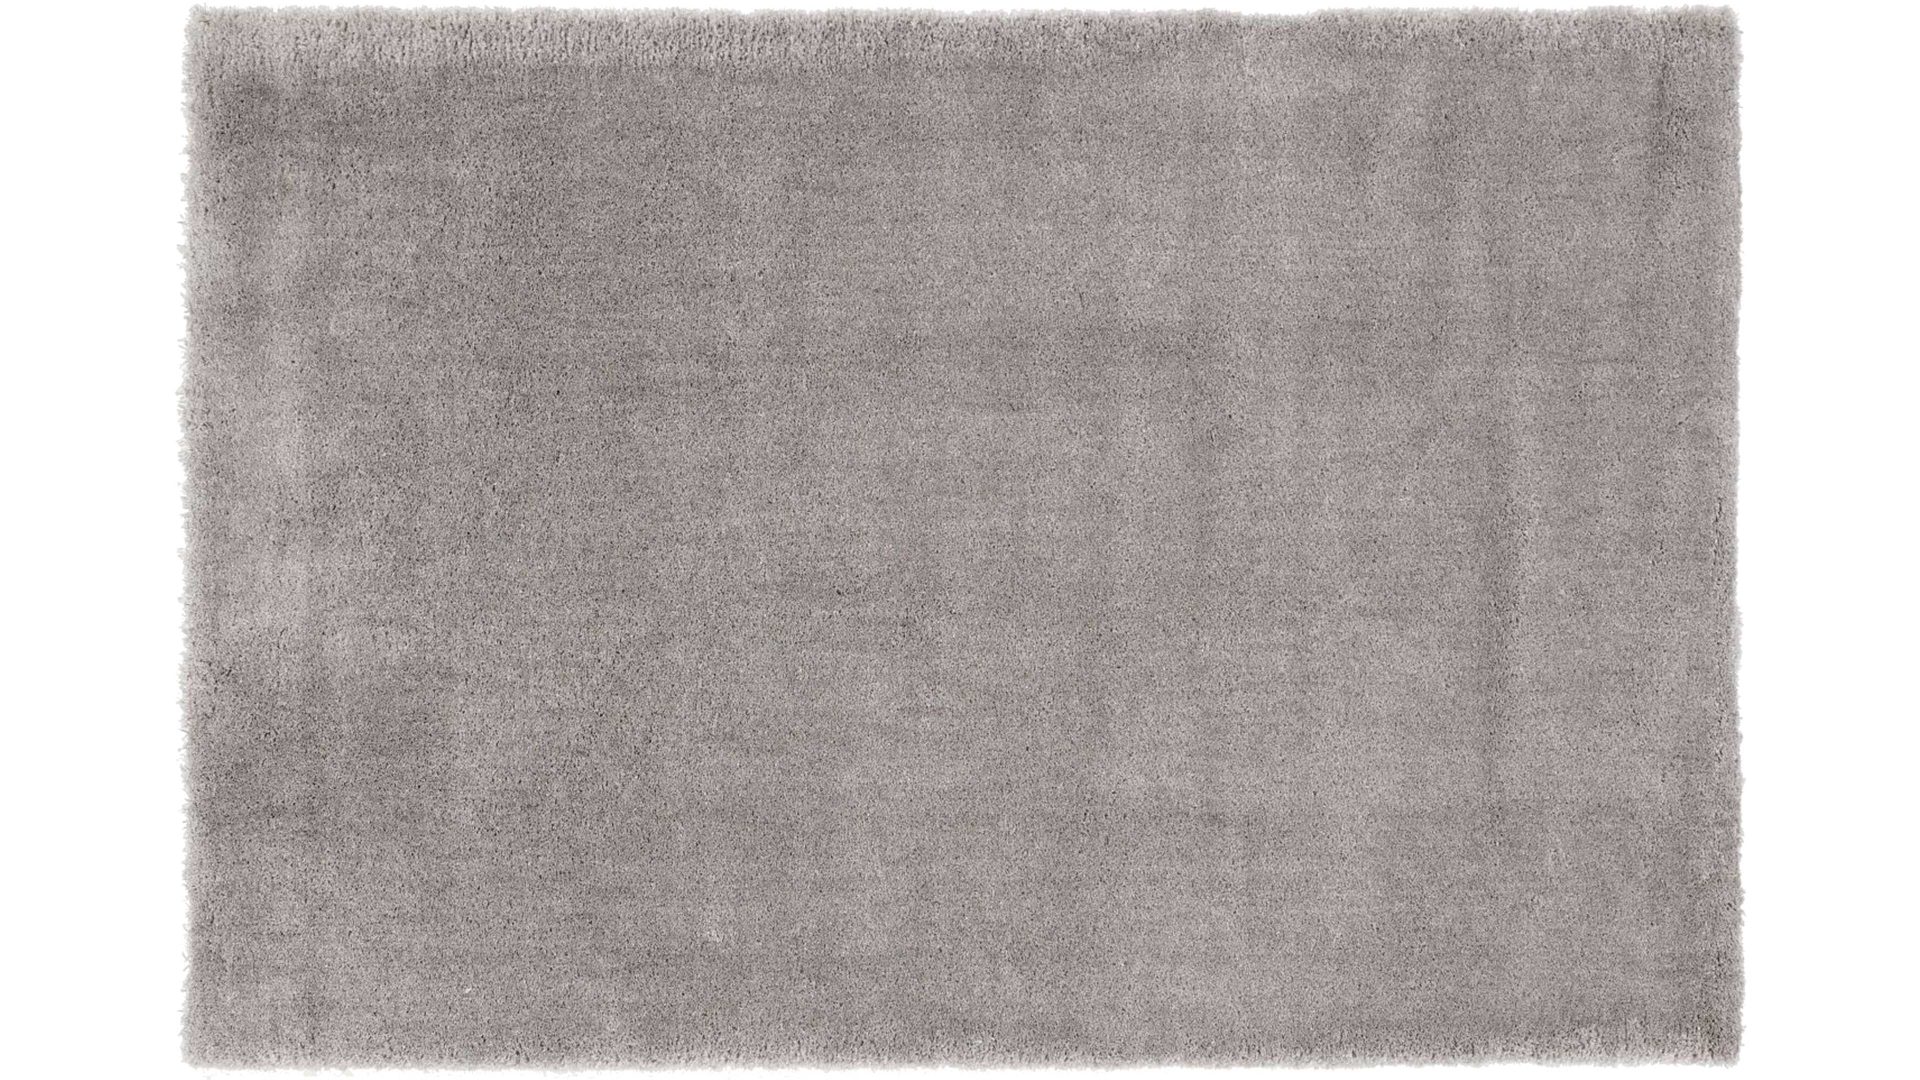 Shaggyteppich Oci aus Kunstfaser in Grau Shaggyteppich Royal Shaggy für Ihre Wohnaccessoires graue Kunstfaser – ca. 65 x 130 cm